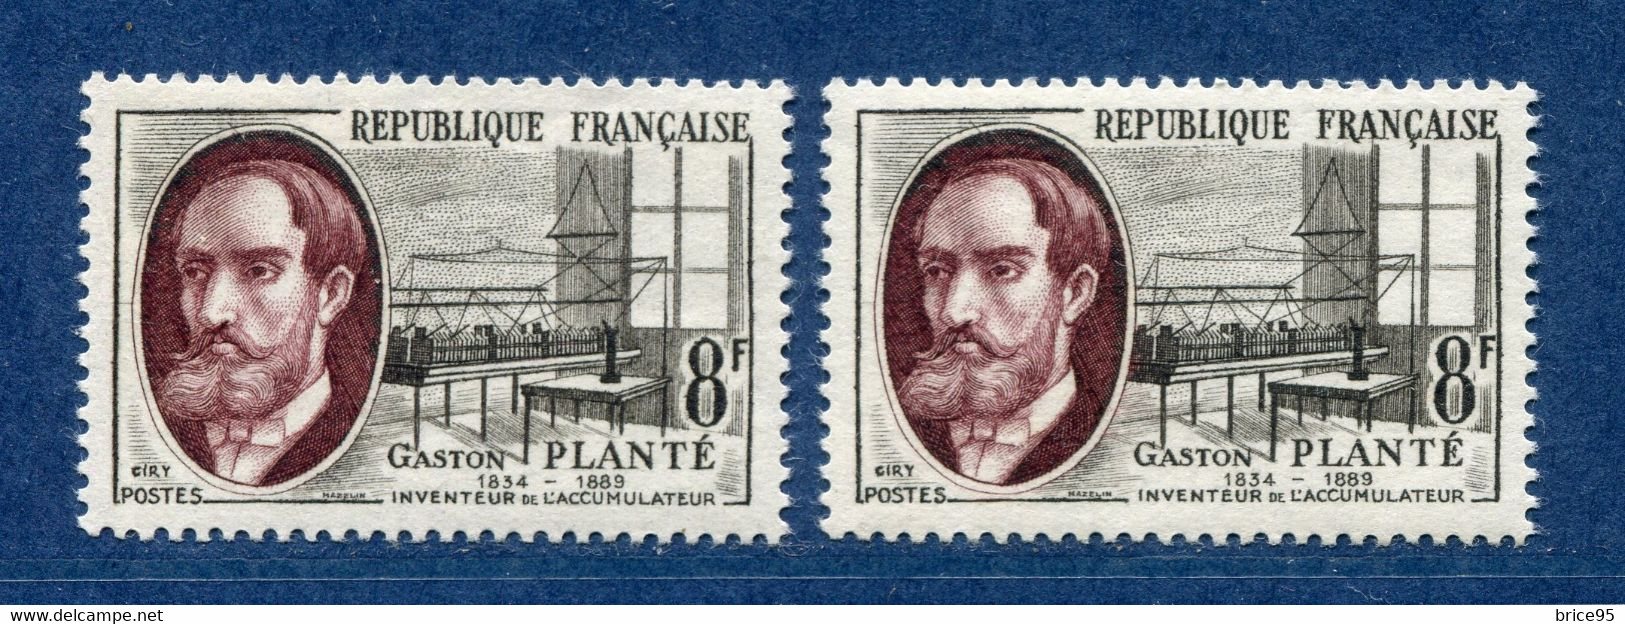 ⭐ France - Variété - YT N° 1095 - Couleurs - Pétouille - Neuf Sans Charnière - 1957 ⭐ - Unused Stamps